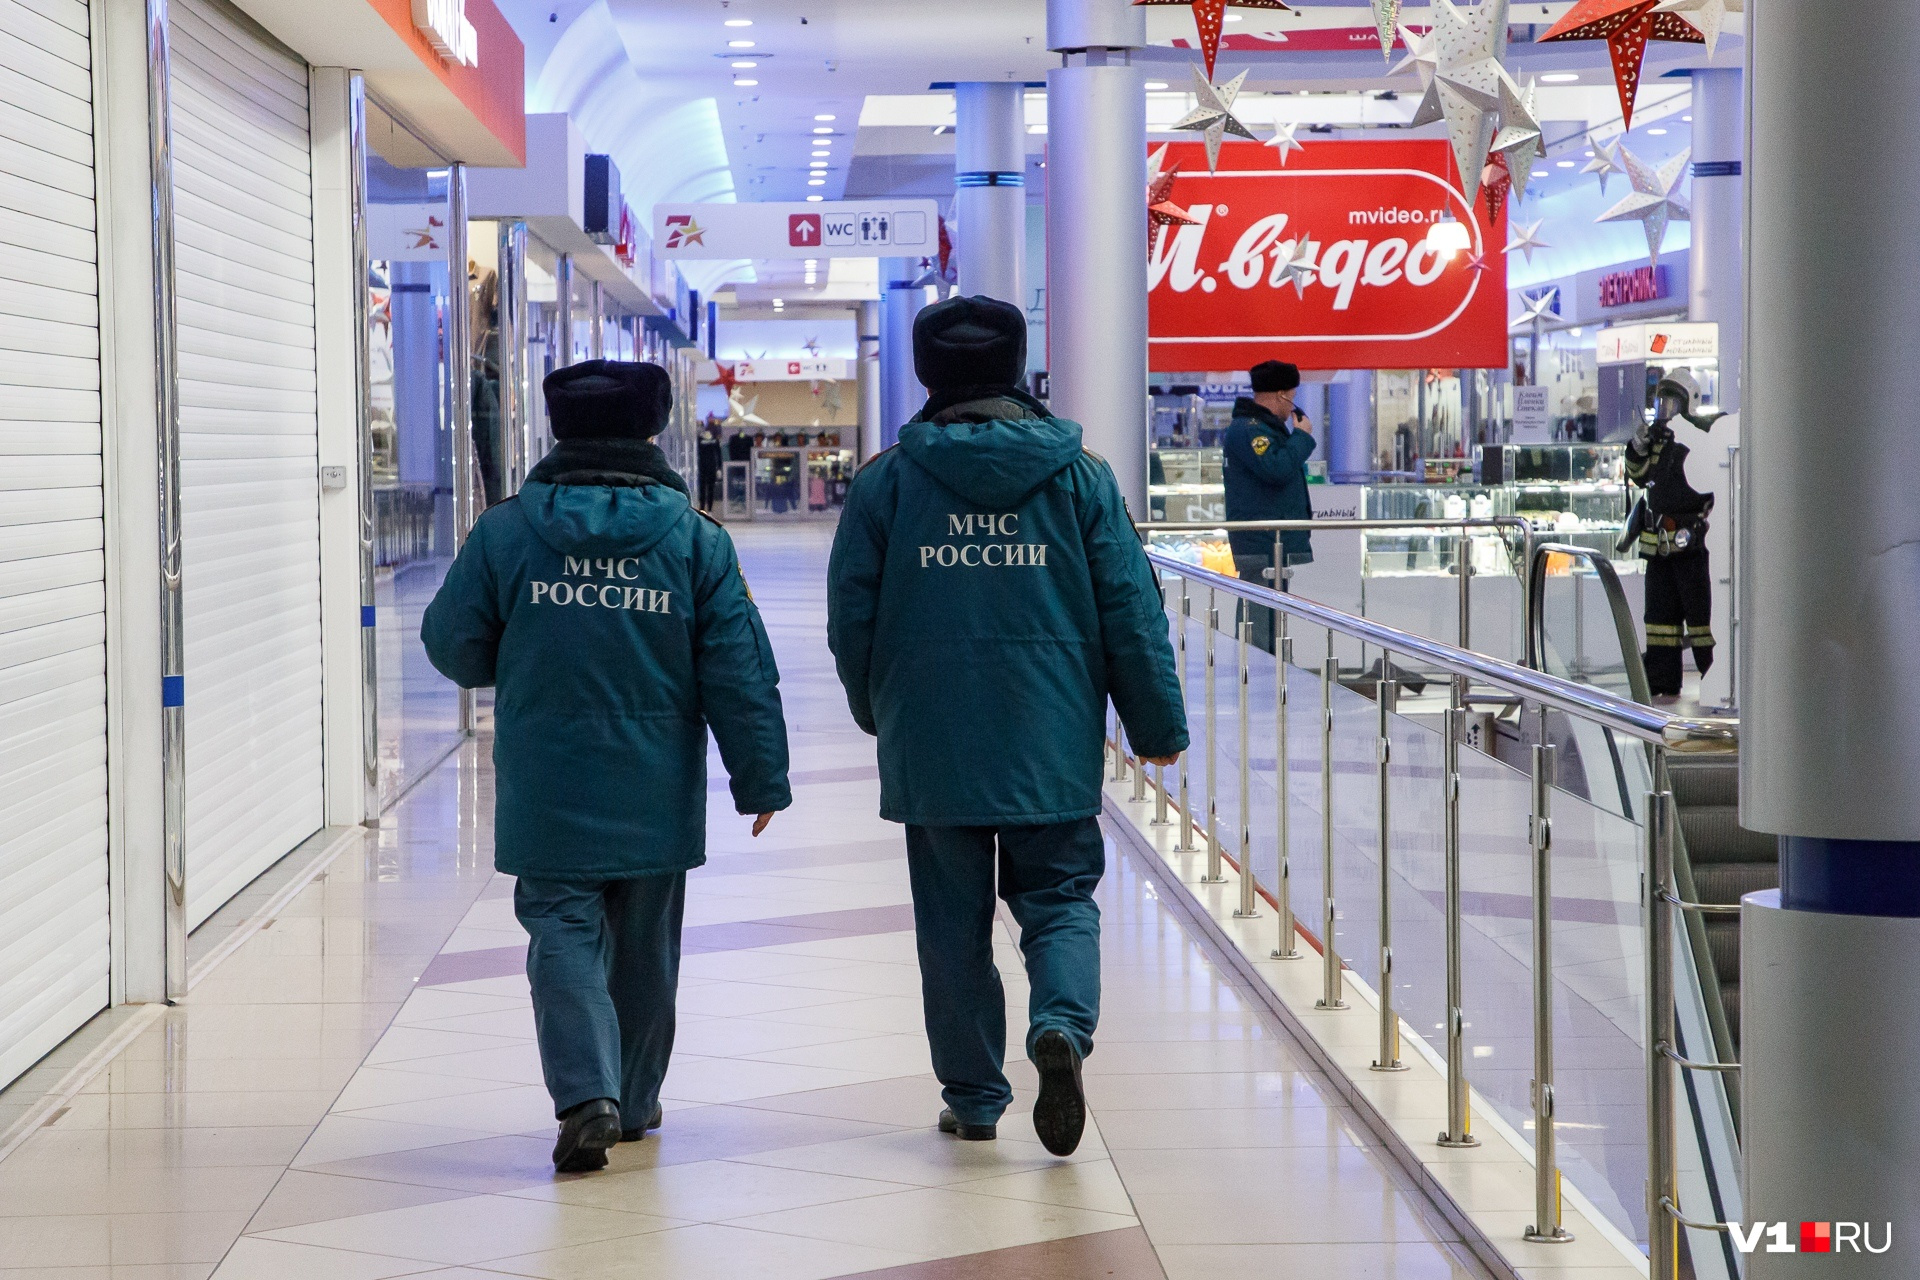 Закон о безопасности торговых центров не могут принять уже второй год, хотя его необходимость после трагедии в Кемерове очевидна